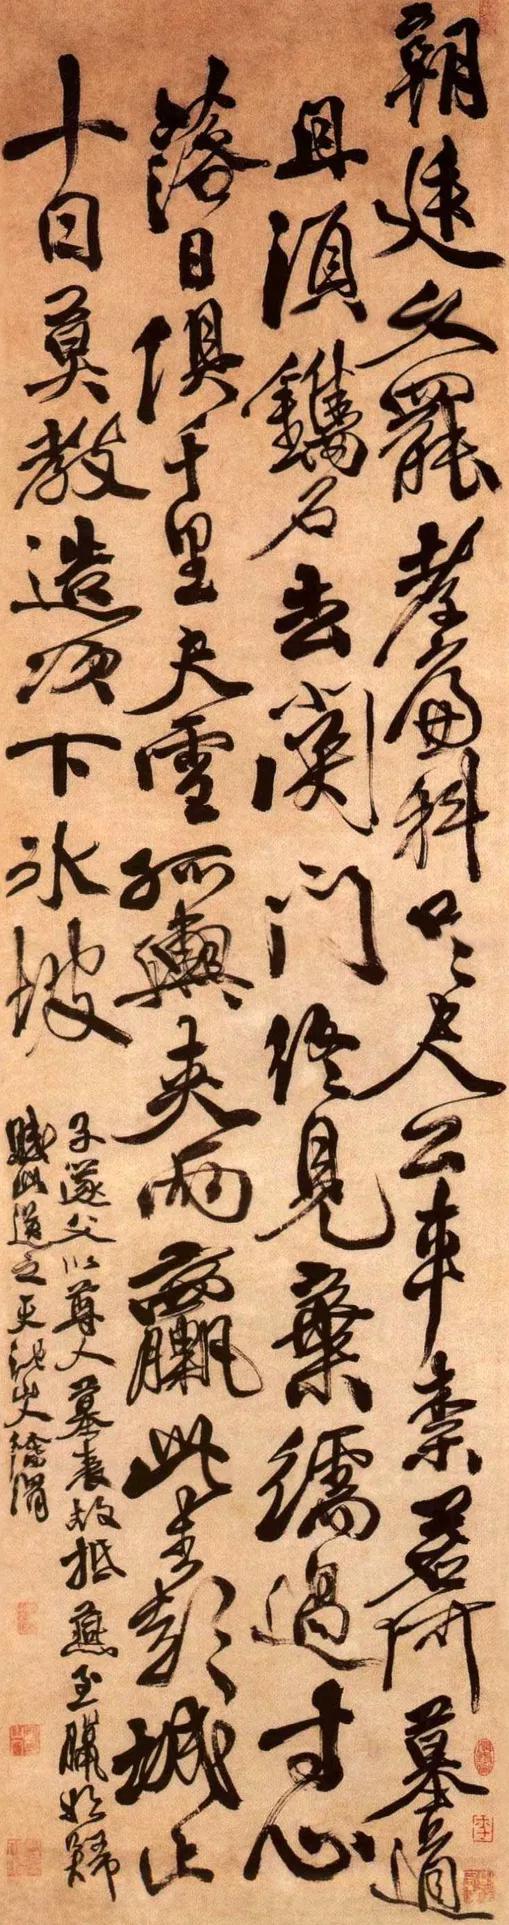 明  徐渭《墓表賦》 紙本墨筆 163.7x43cm  北京故宮博物院藏